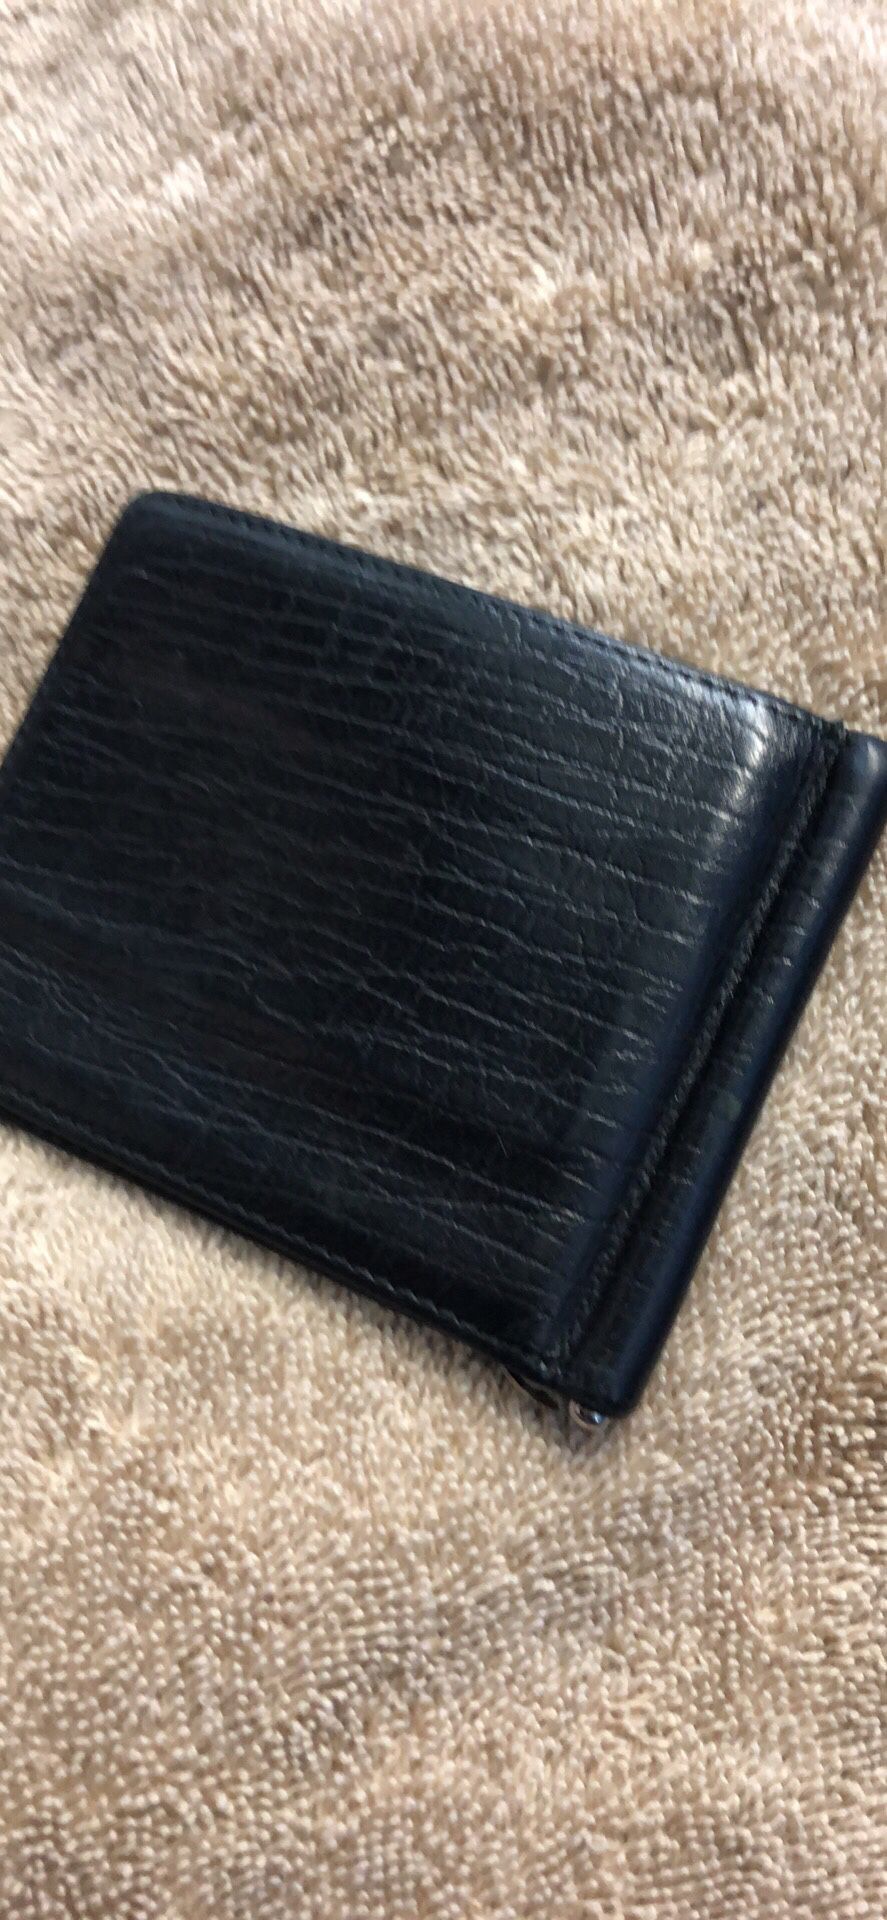 Men’s Gucci money clip wallet -used